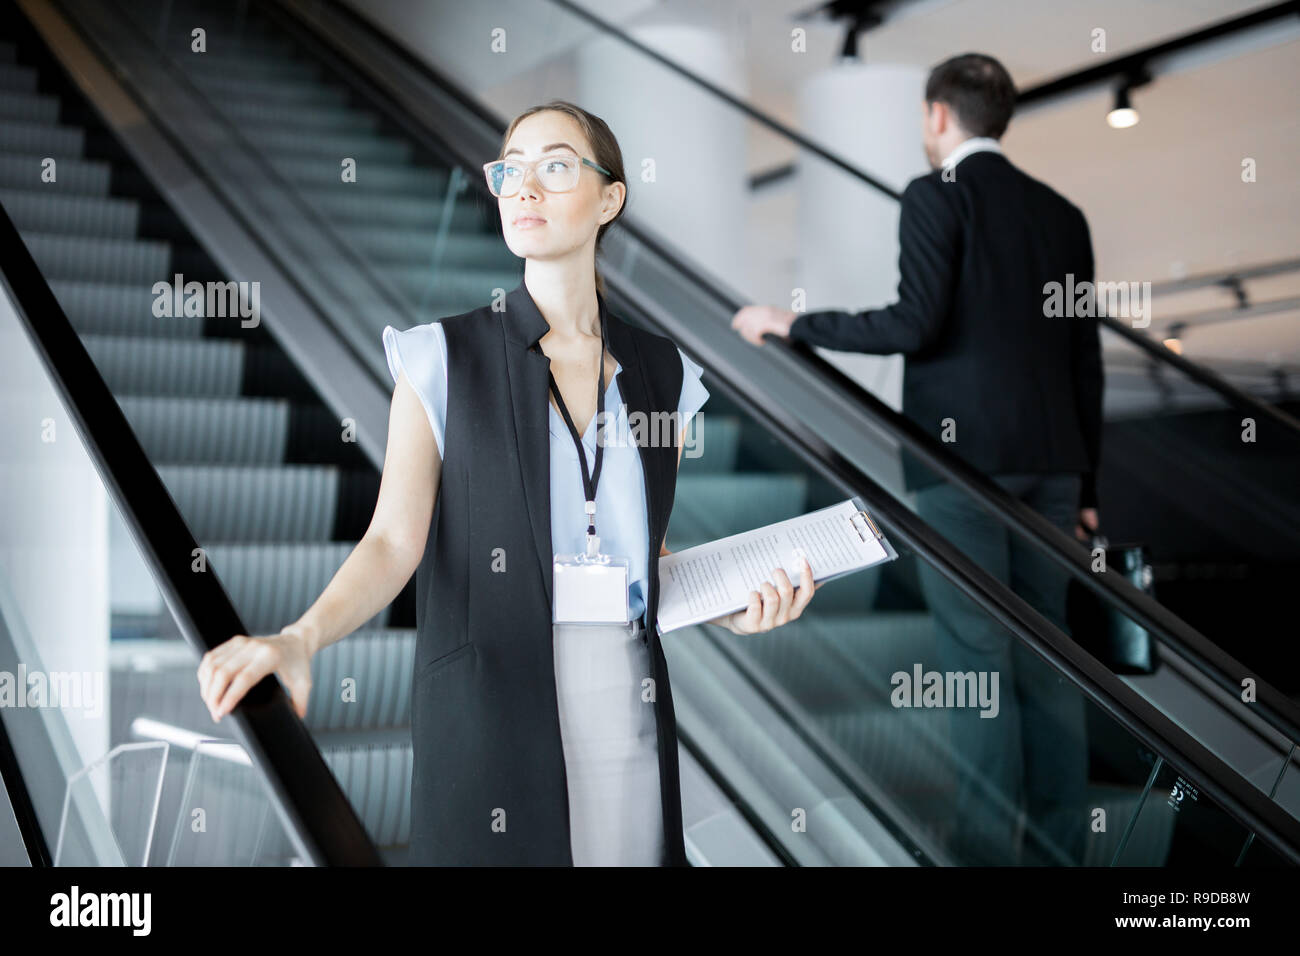 Delegate on escalator Stock Photo